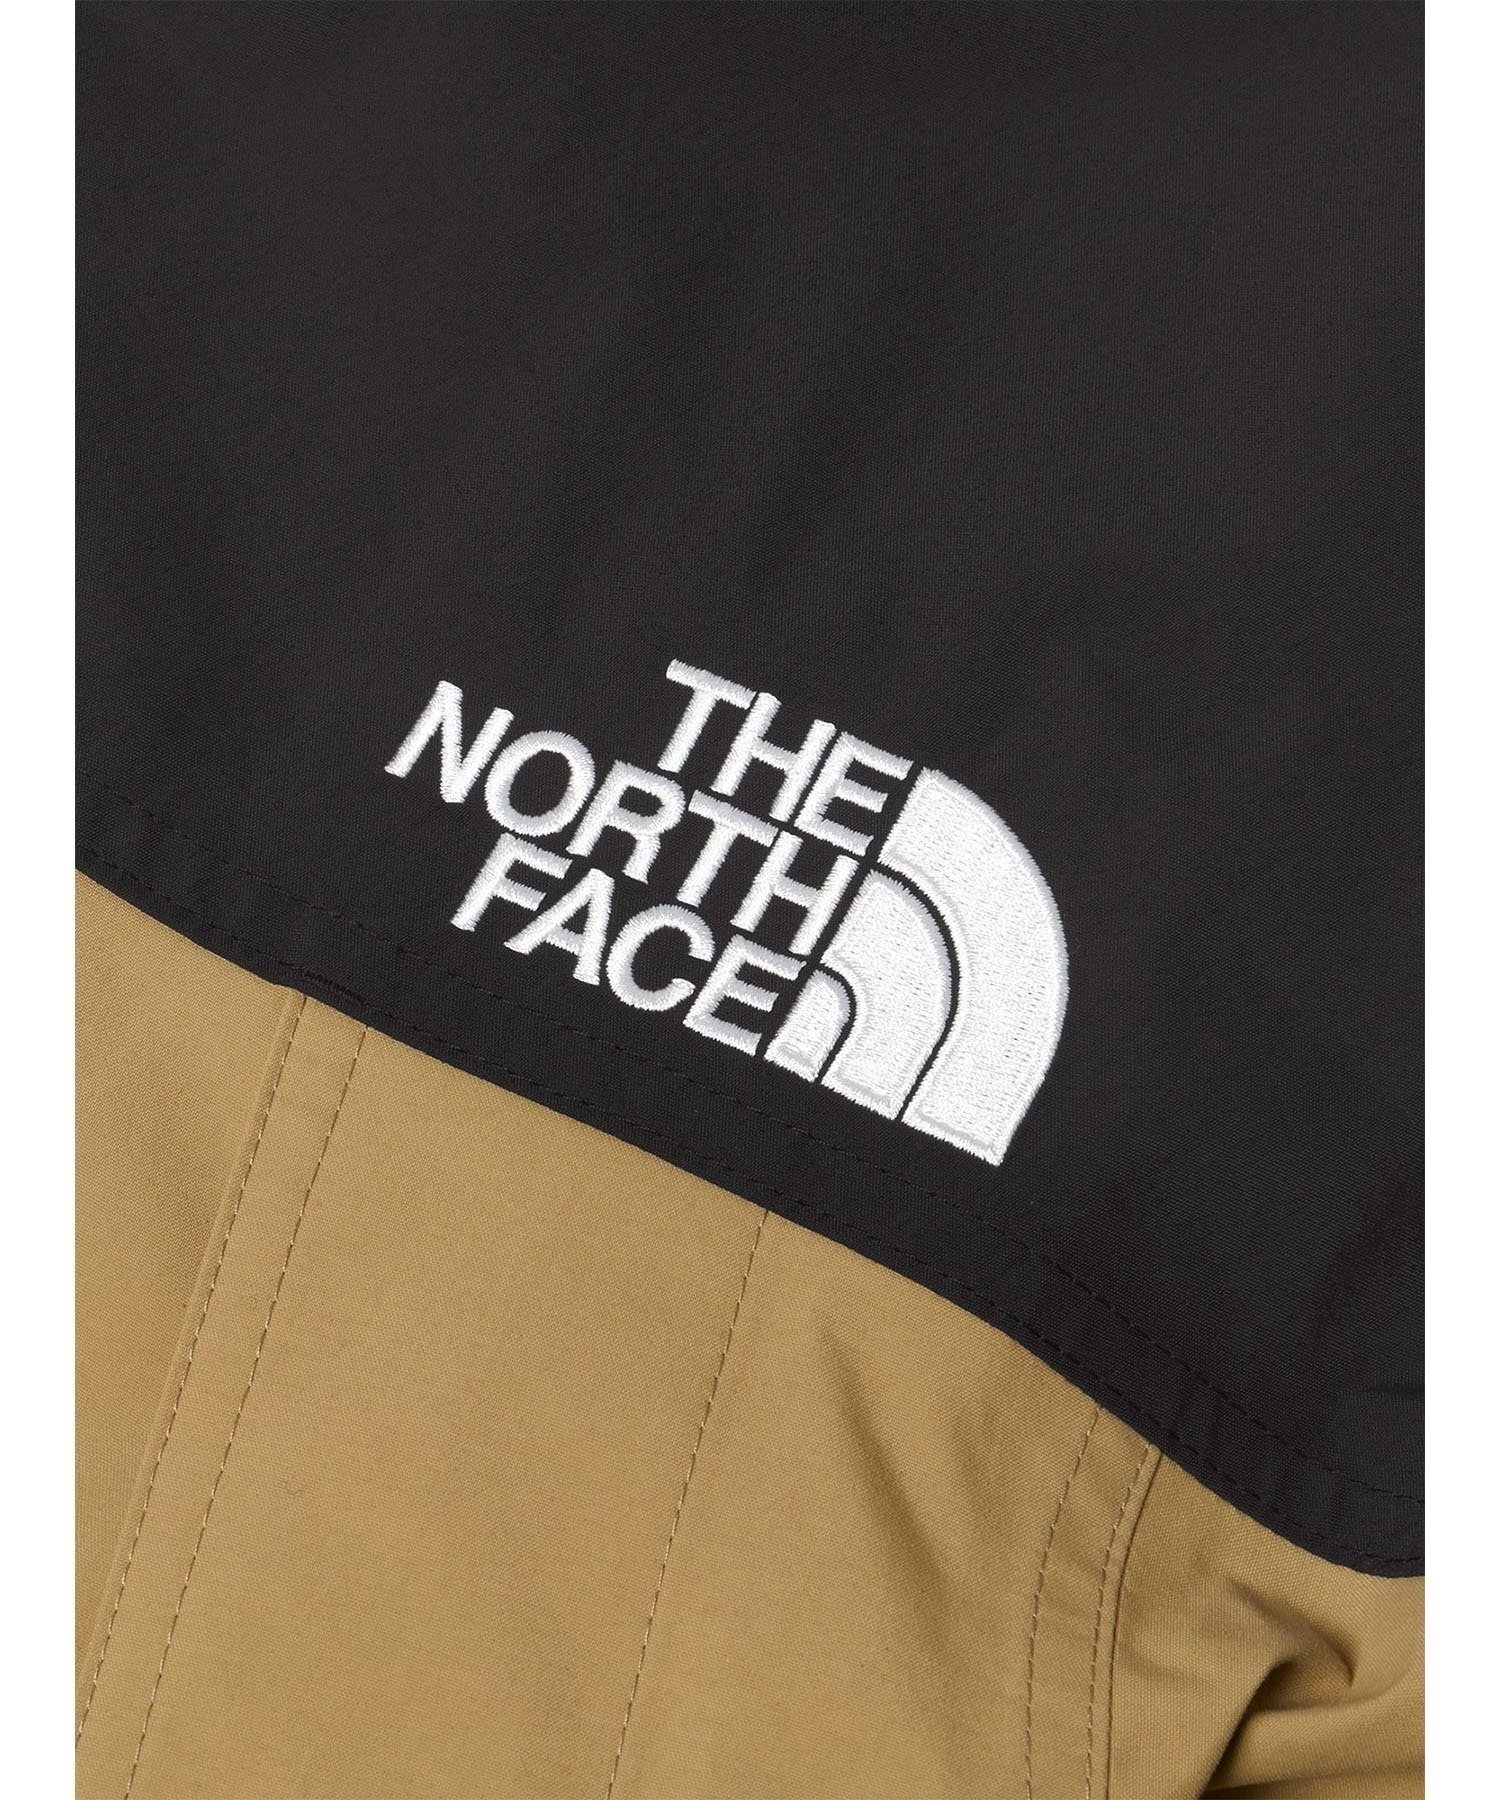 THE NORTH FACE/ノースフェイス MOUNTAIN LIGHT JACKET マウンテンライトジャケット GORE-TEX 防水 防風 NP62236(KT-S)